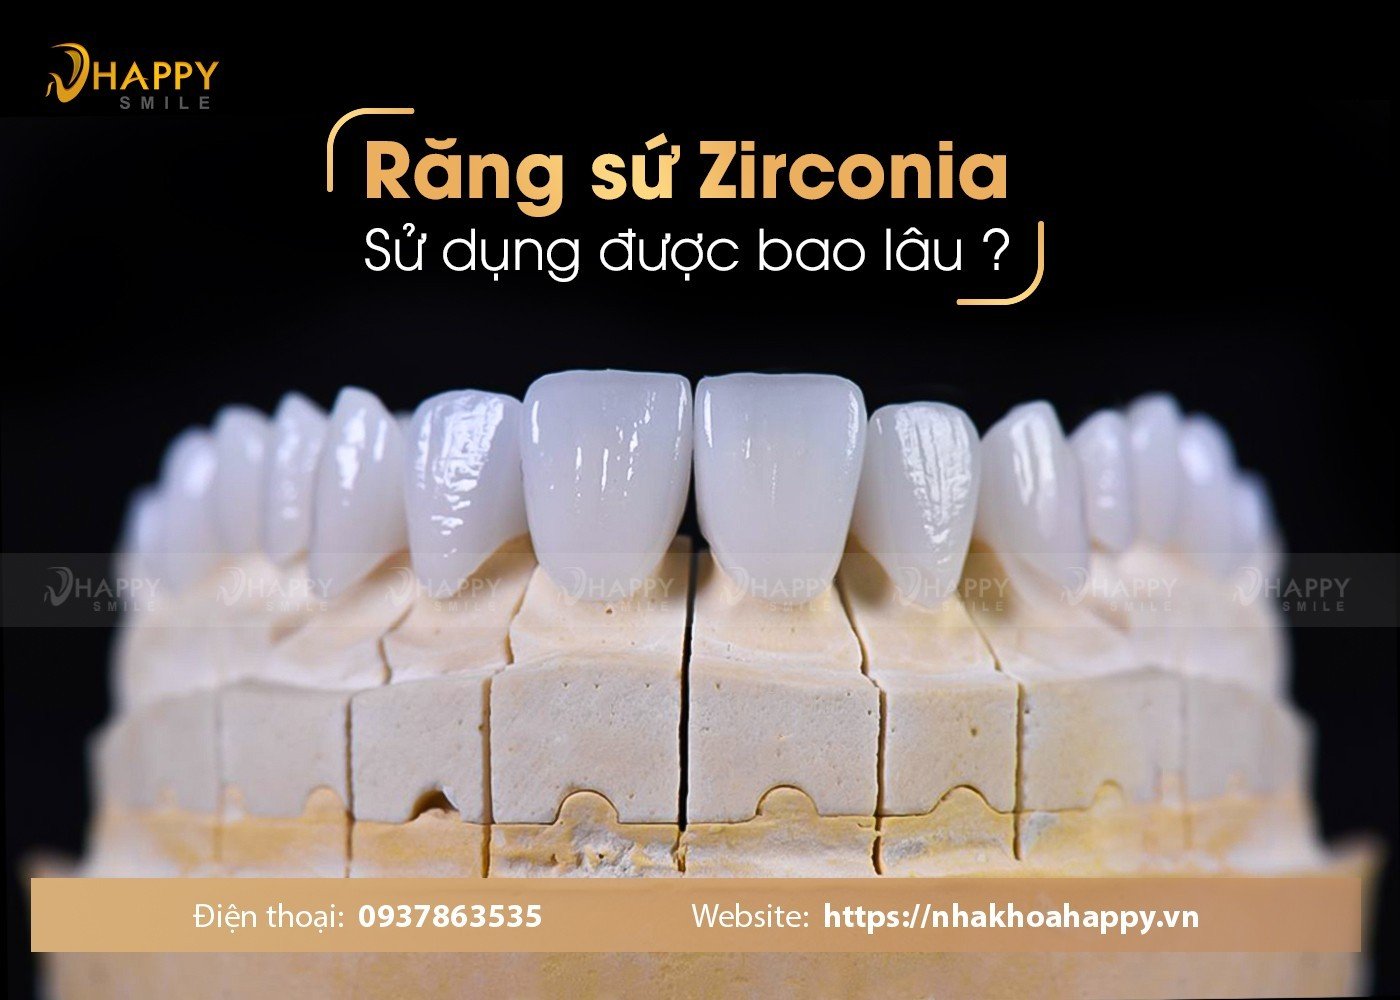 Tuổi thọ răng sứ zirconia là bao lâu? Cách chăm sóc răng sứ tốt nhất